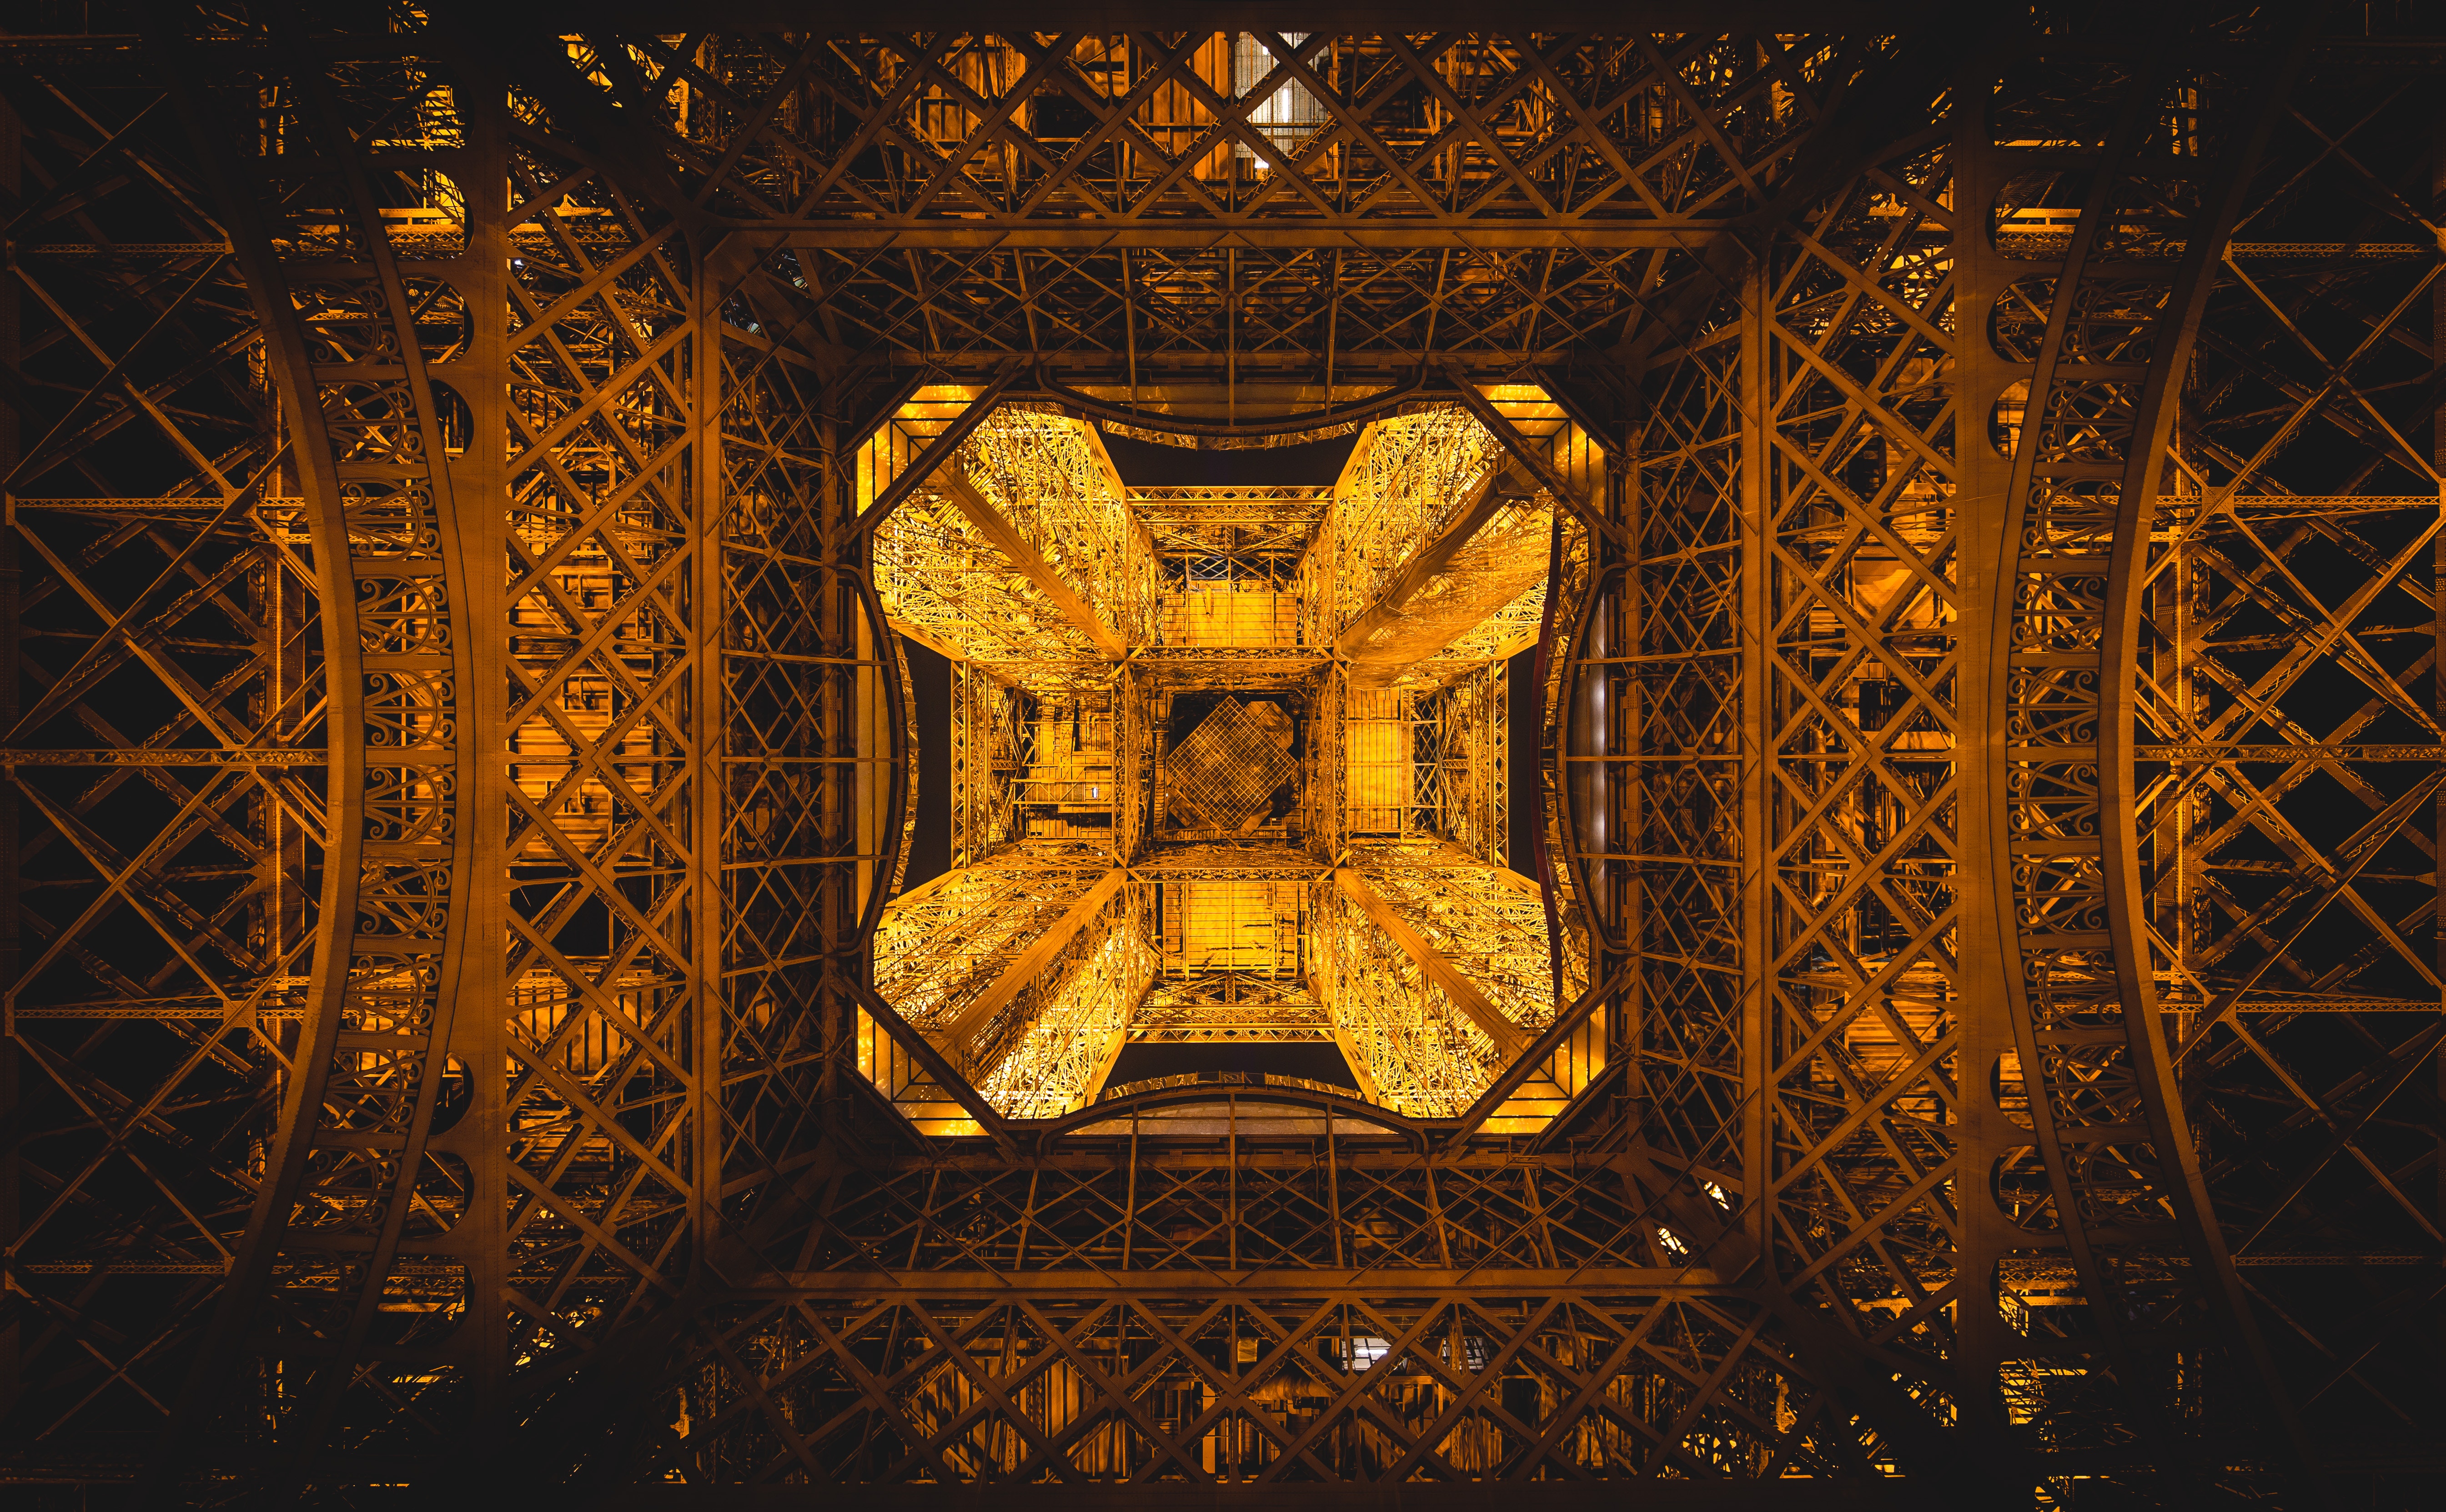 Architecture Eiffel Tower France Paris 5379x3326